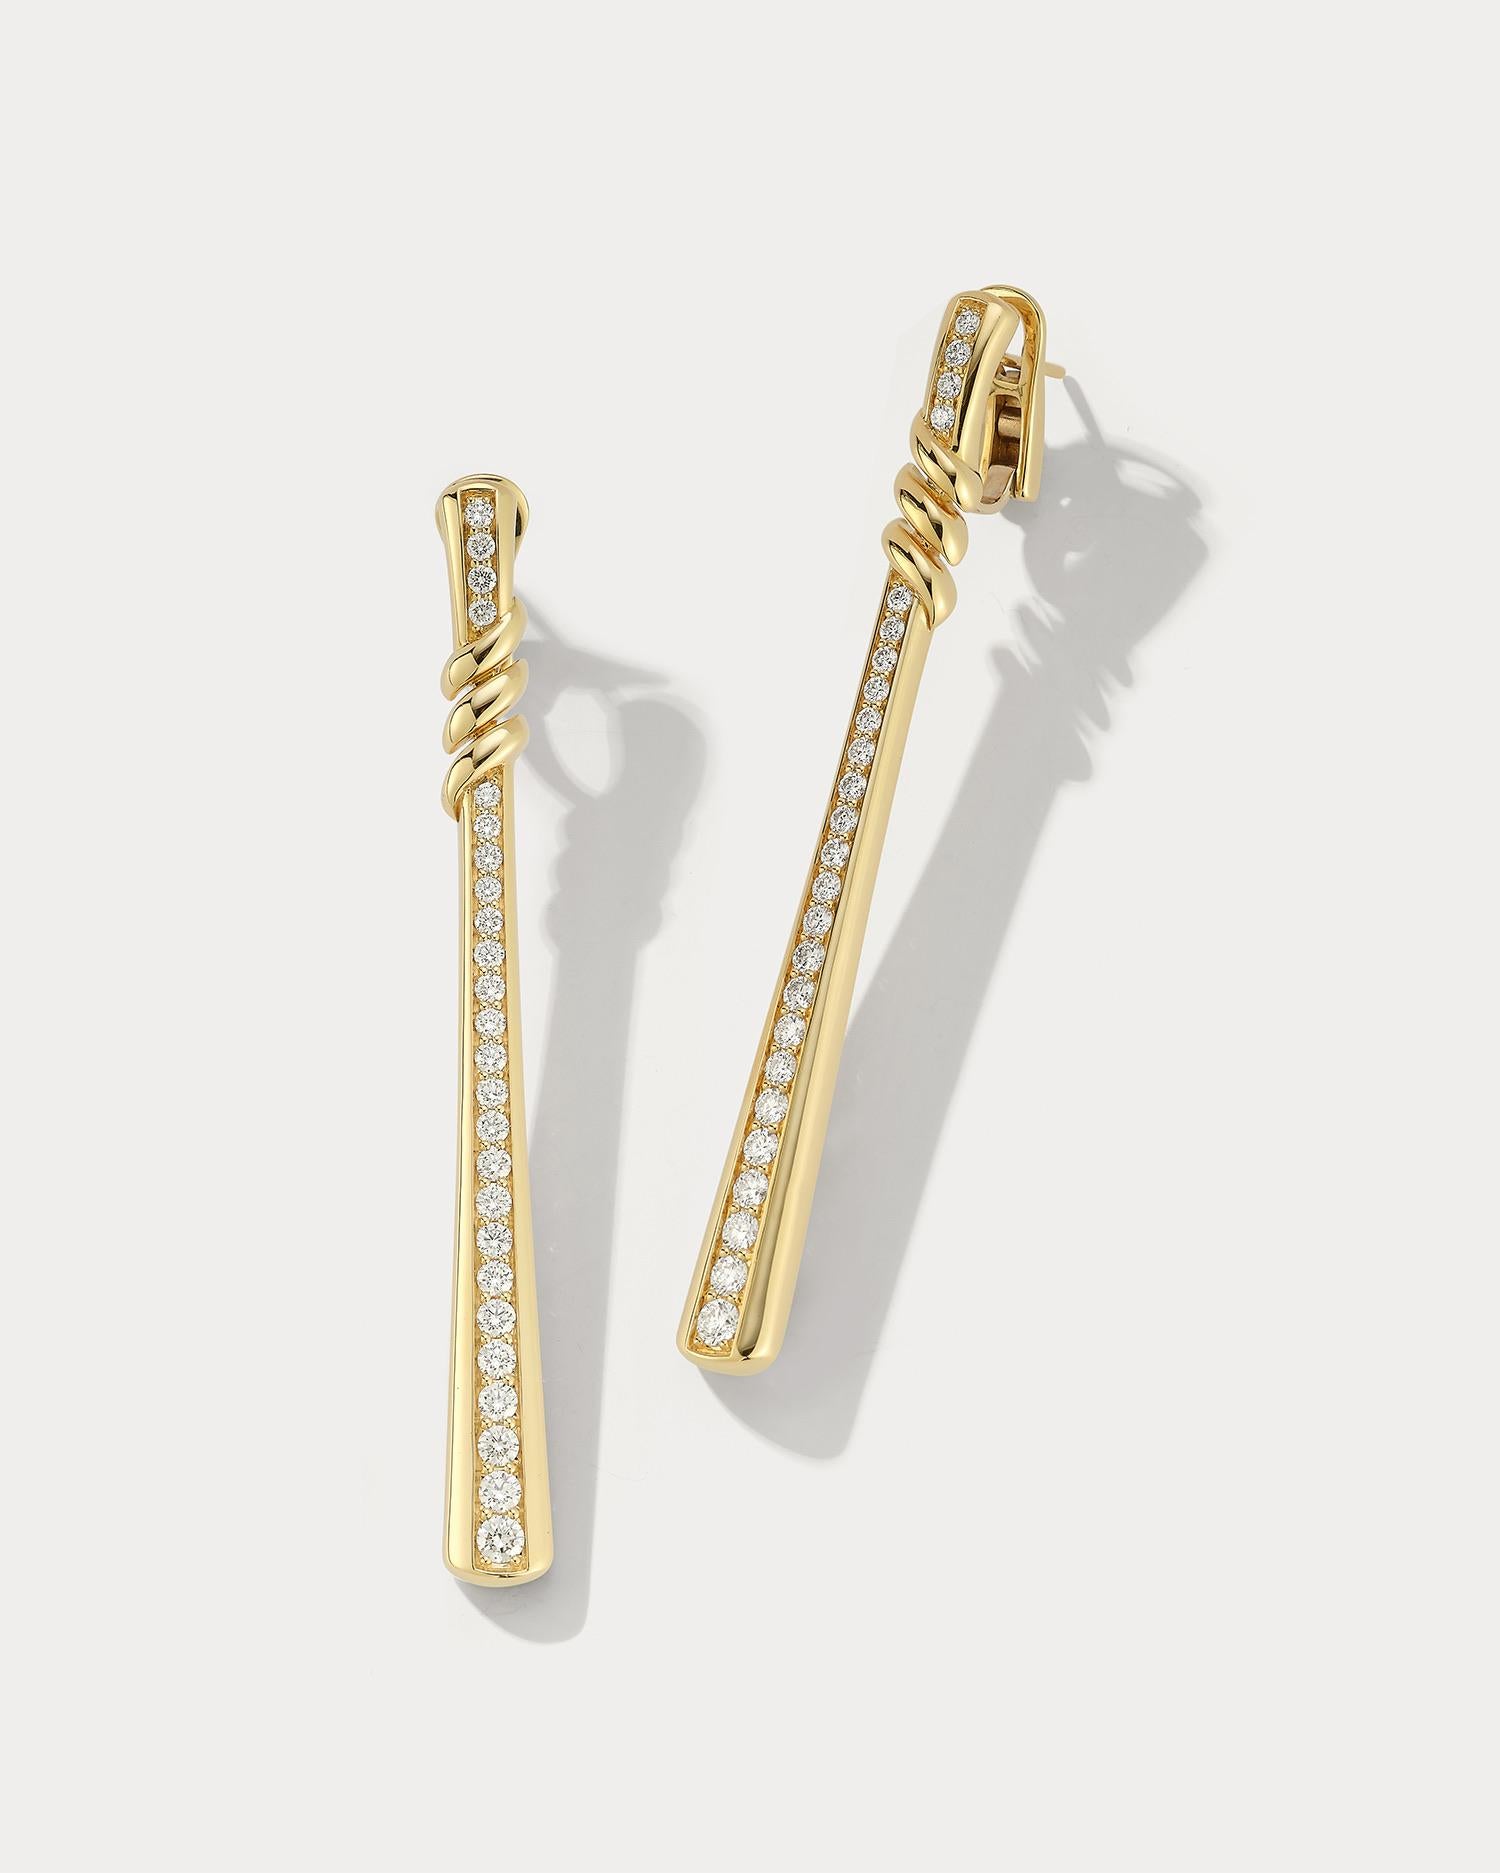 Ces boucles d'oreilles pendantes en or jaune et diamants sont un équilibre parfait entre élégance et sophistication. Fabriquées en or jaune 18 carats, ces boucles d'oreilles sont ornées d'un superbe clou en diamant au sommet, attaché à une chaîne